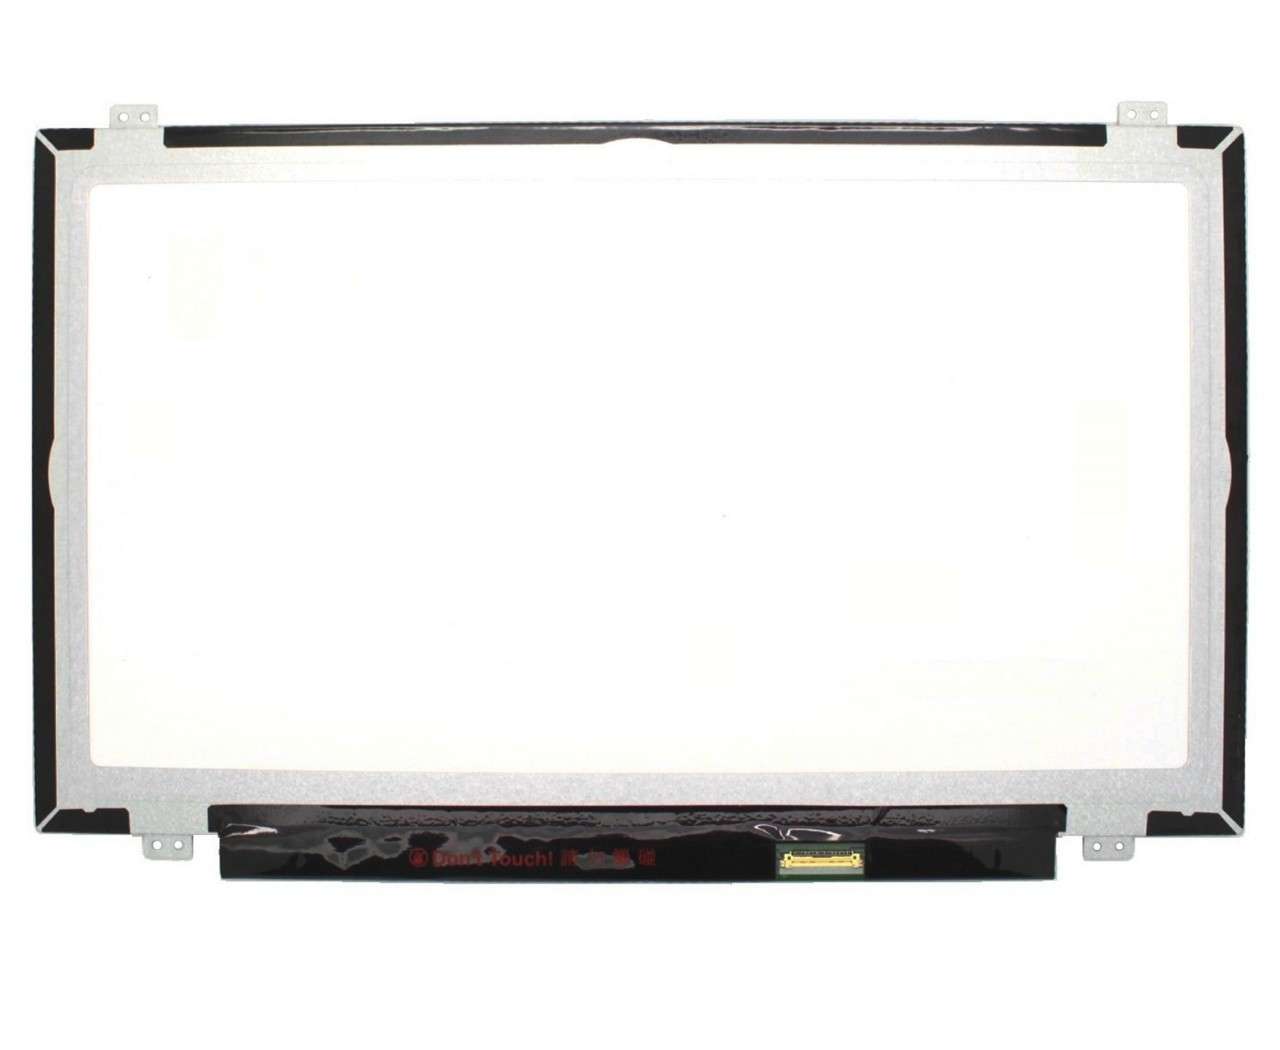 Display laptop Asus 18010-14002300 Ecran 14.0 1920x1080 30 pini eDP